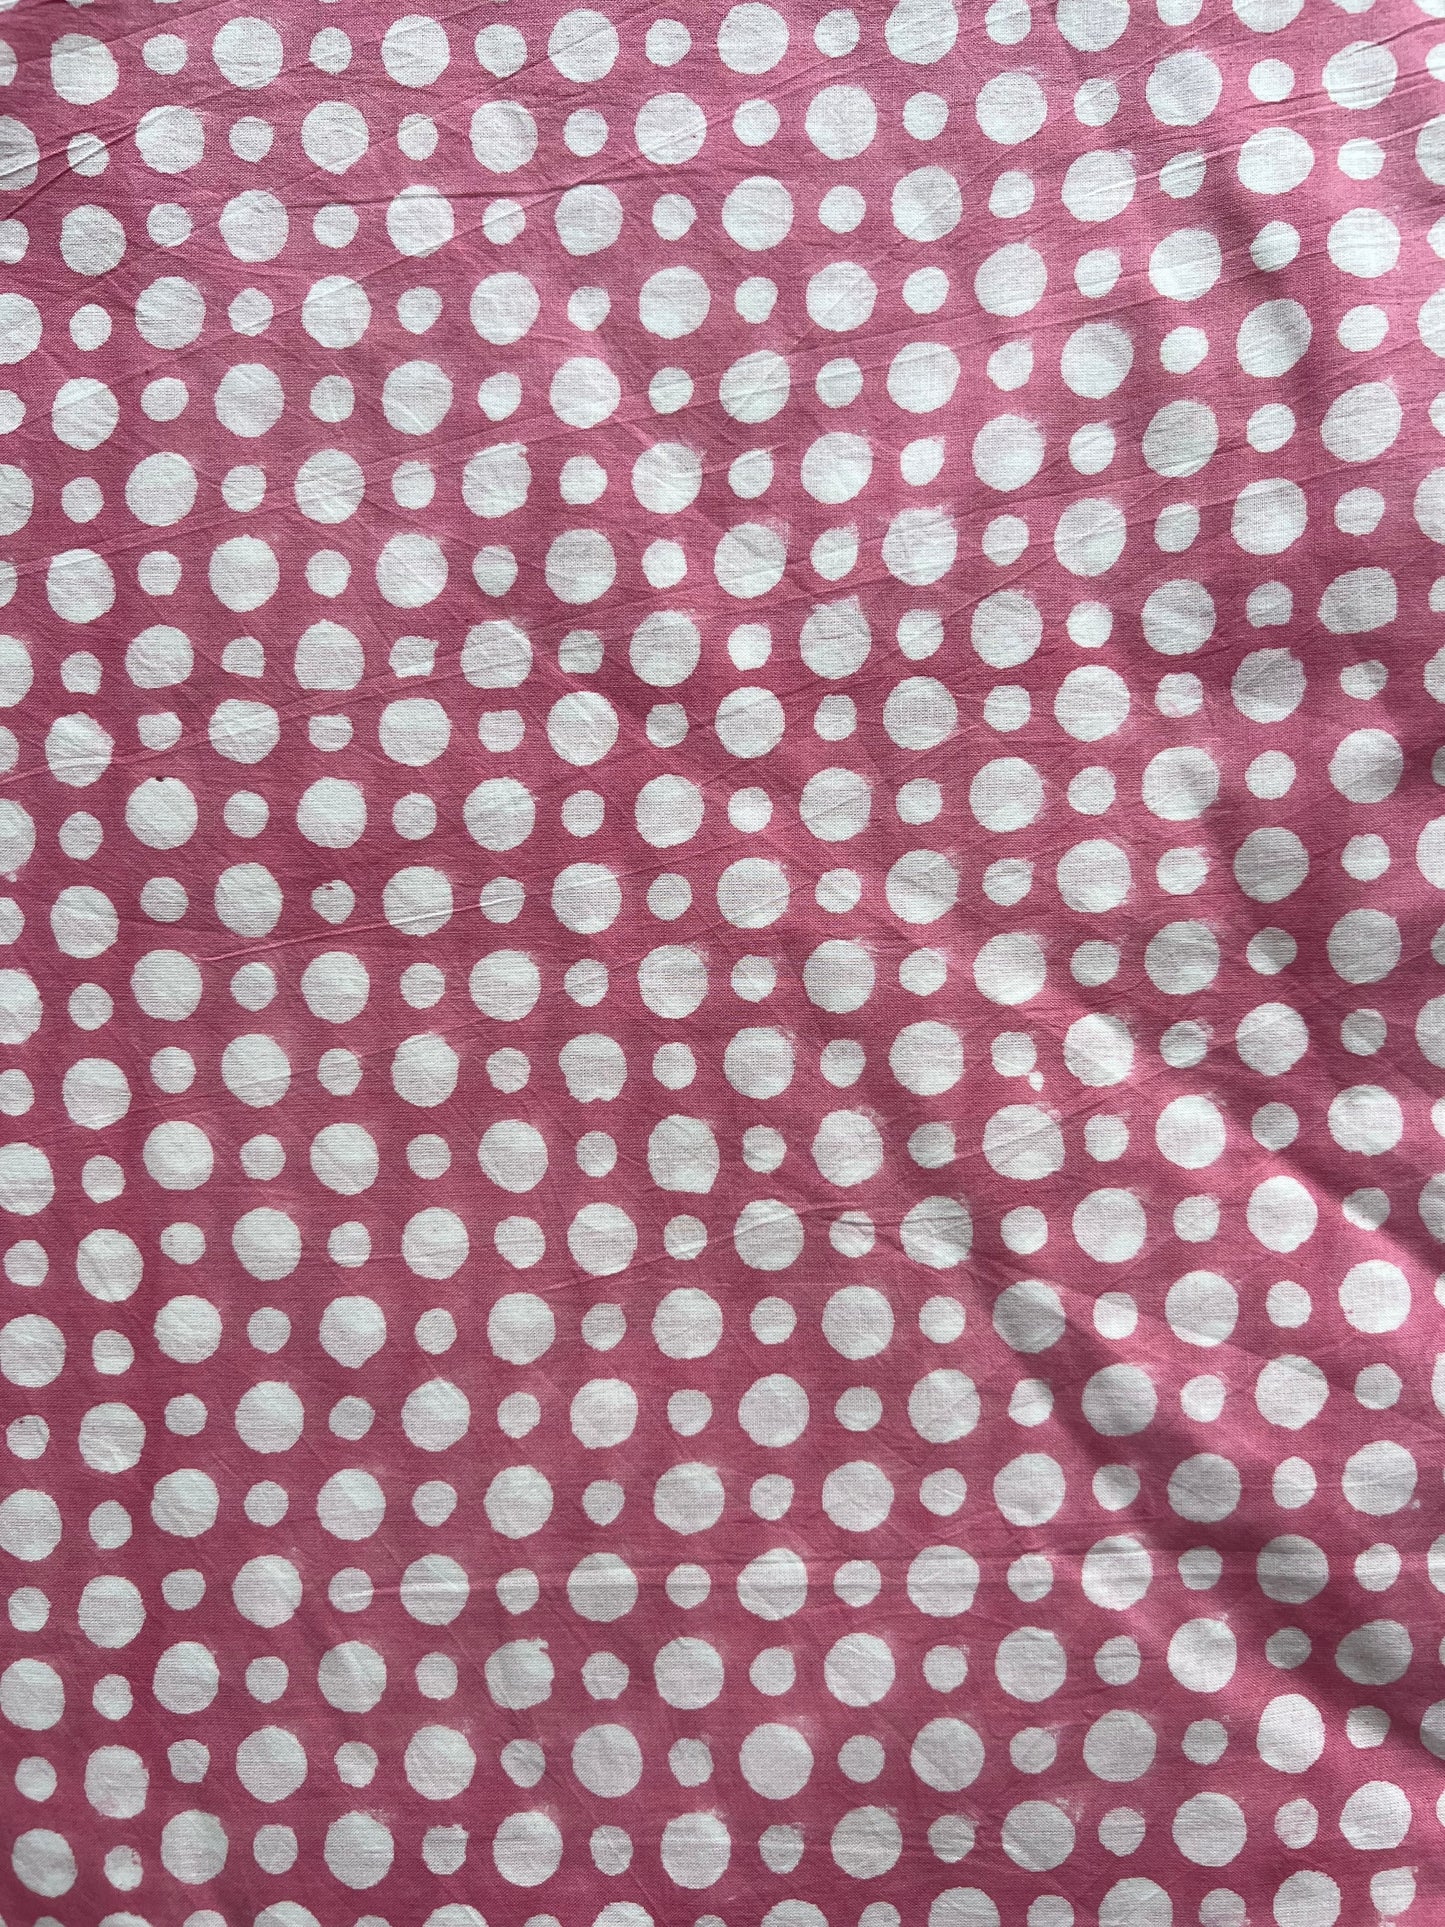 lightweight cotton bubblegum pink spots